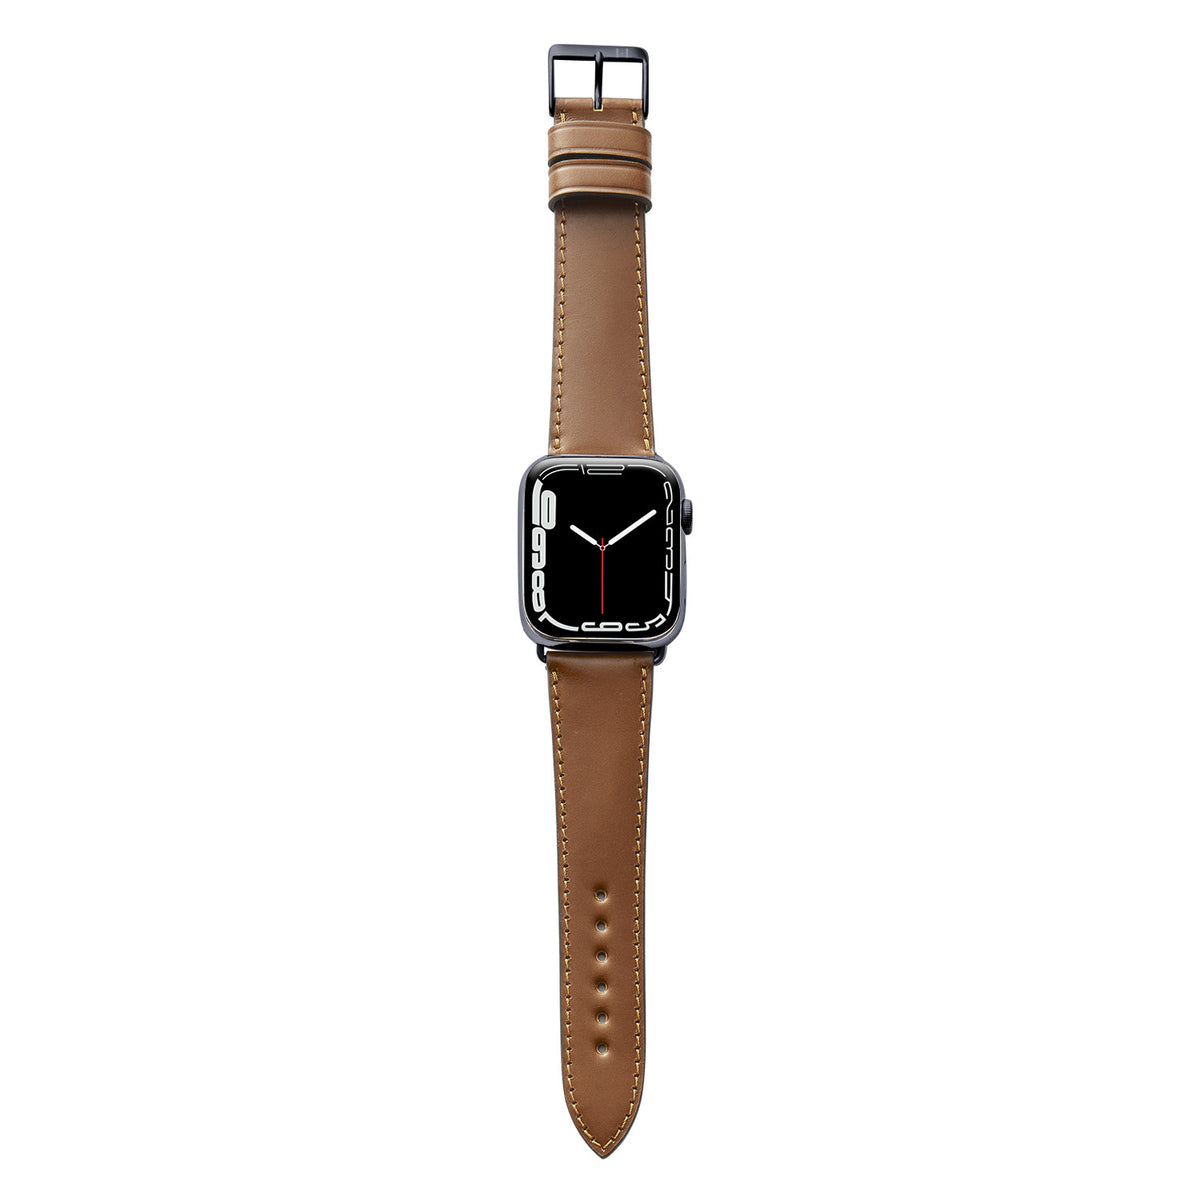 Cinturino in pelle per Apple Watch realizzato in Shell Cordovan &quot;WINTERHUDE&quot; - Cognac